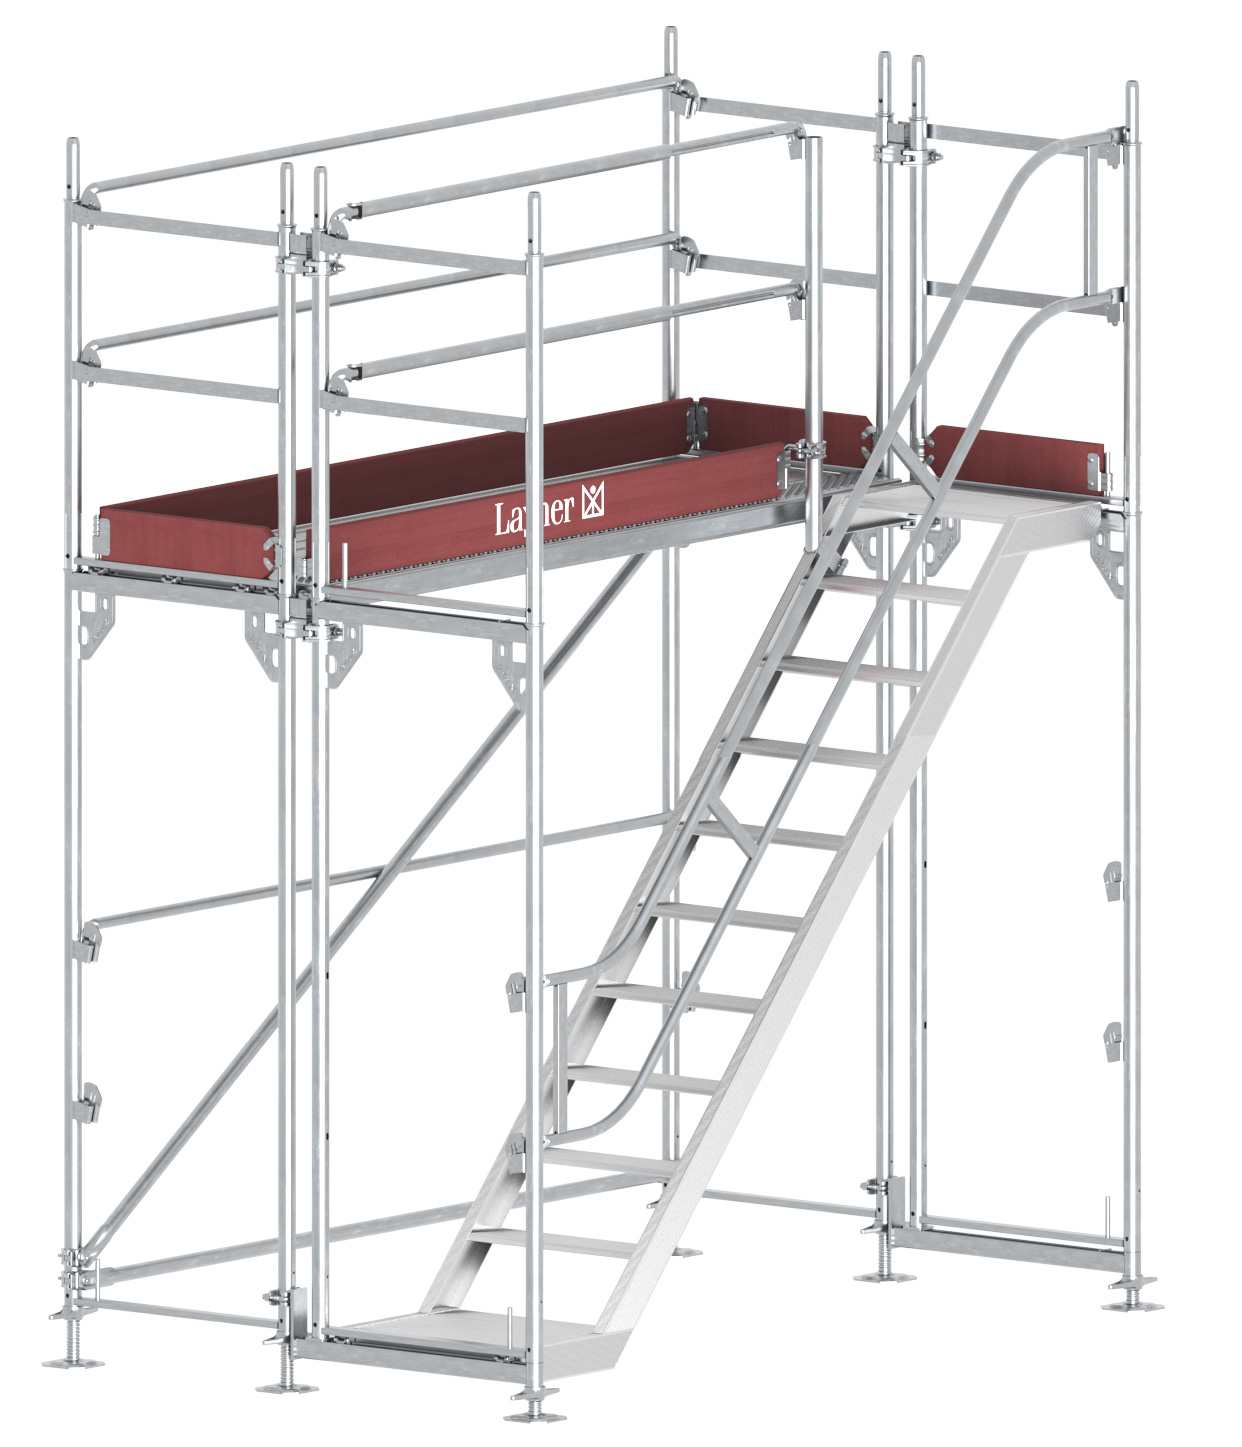 Layher Blitz Treppenturm Stahl - 2,57 x 2,20 m Gerüsttreppenturm Fassadengerüst- komfortabler Aufstieg nach TRBS 2121-2 (LG-1753-0200-S) Bild-01